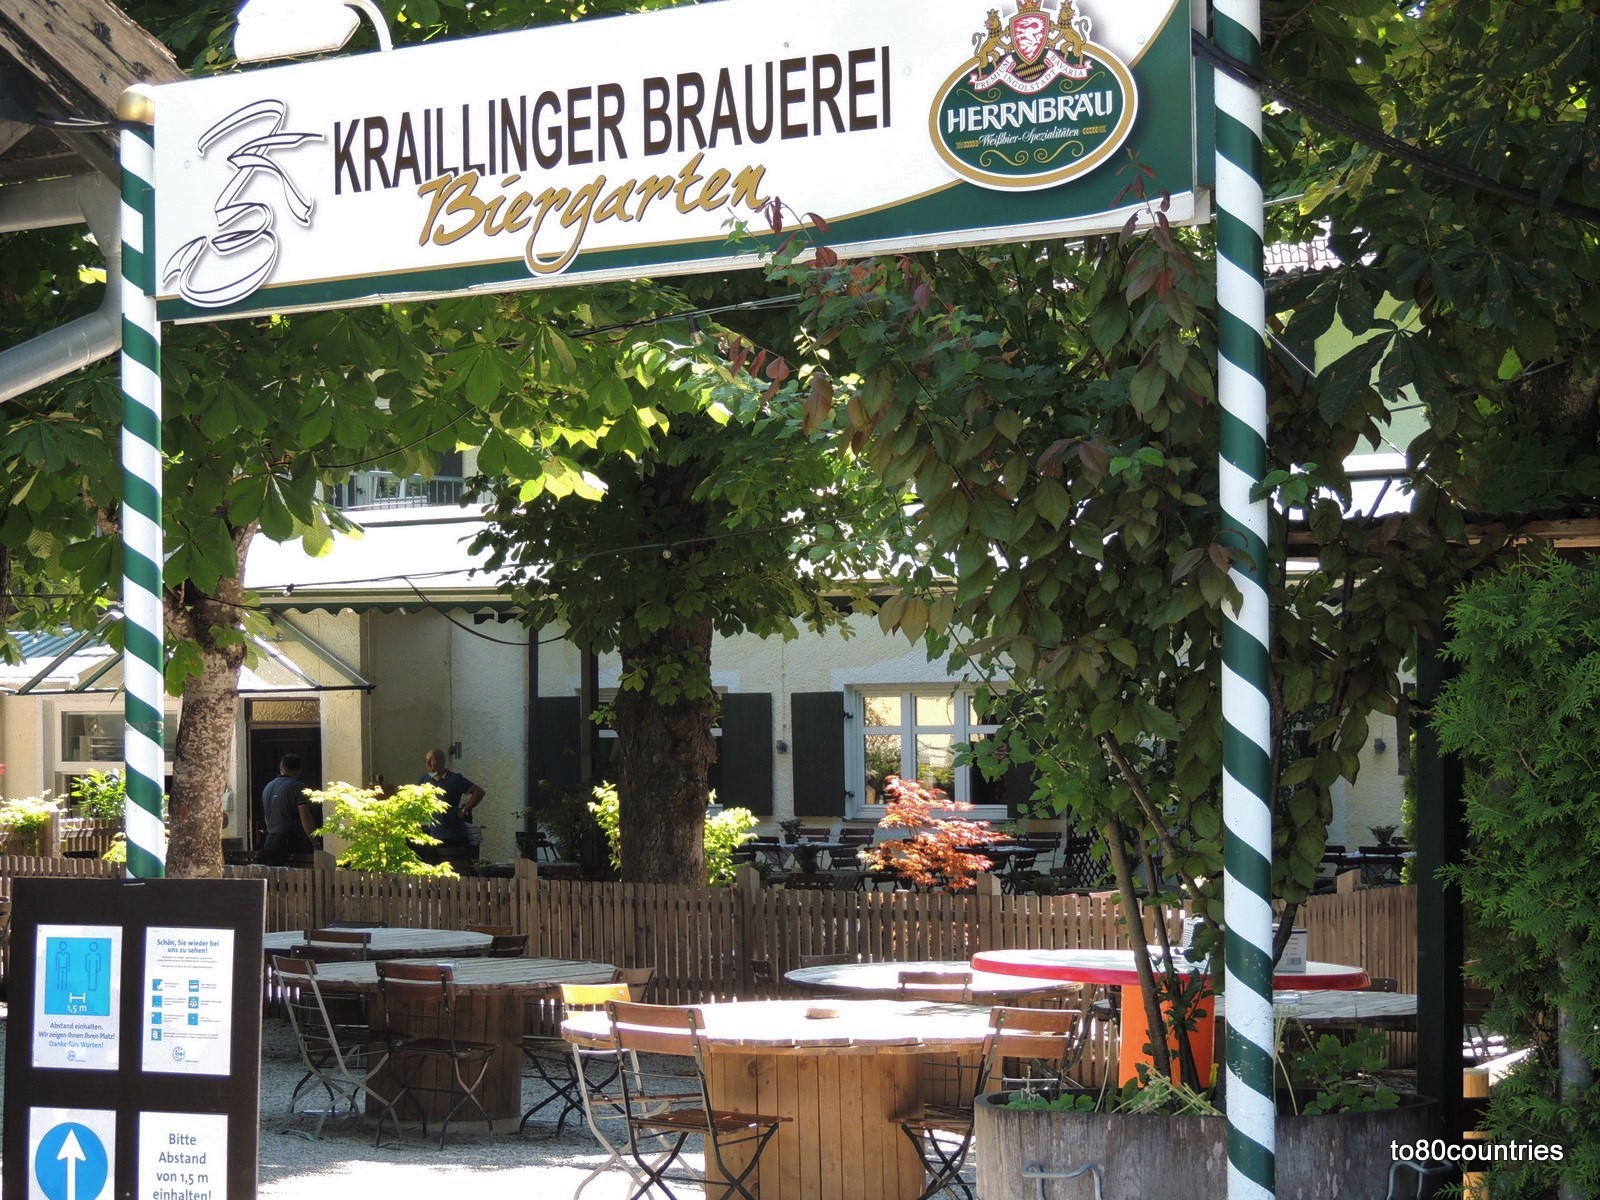 Biergarten "Kraillinger Brauerei" an der Würm